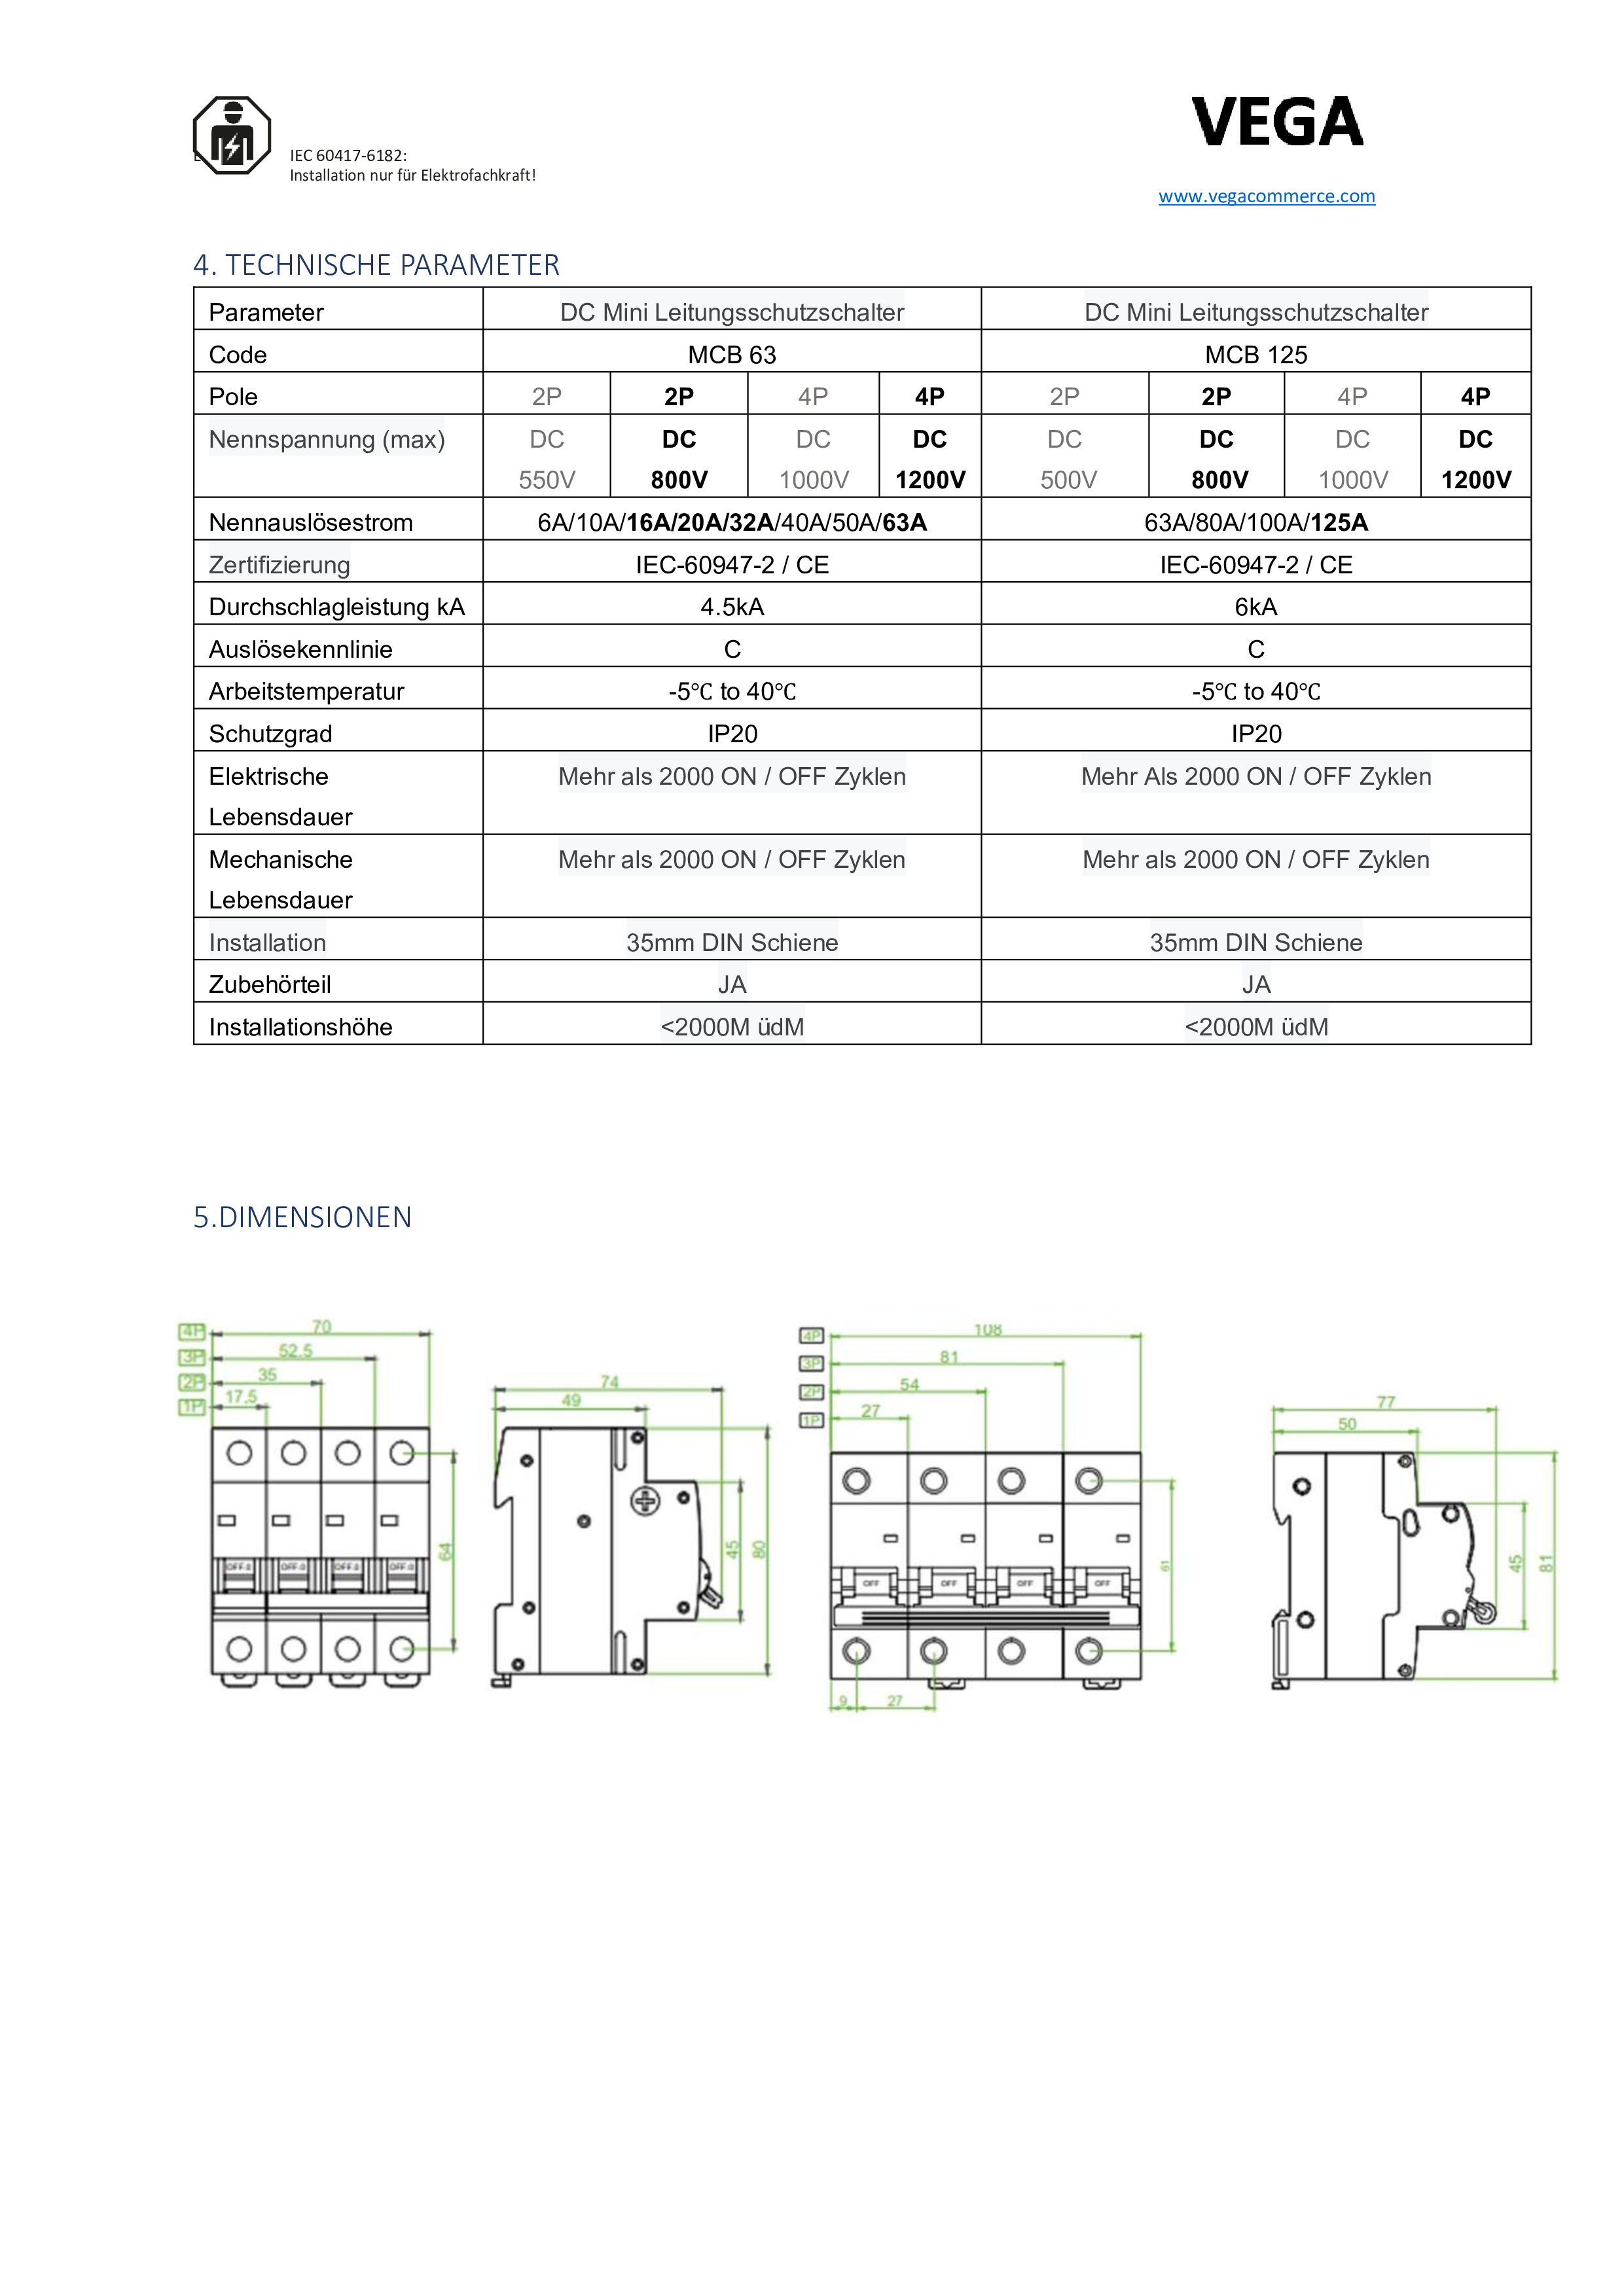 DC-Breaker / DC-Trennschalter / PV Solar / 125A / 1200 VDC / 4 Polig / Vega  MCB